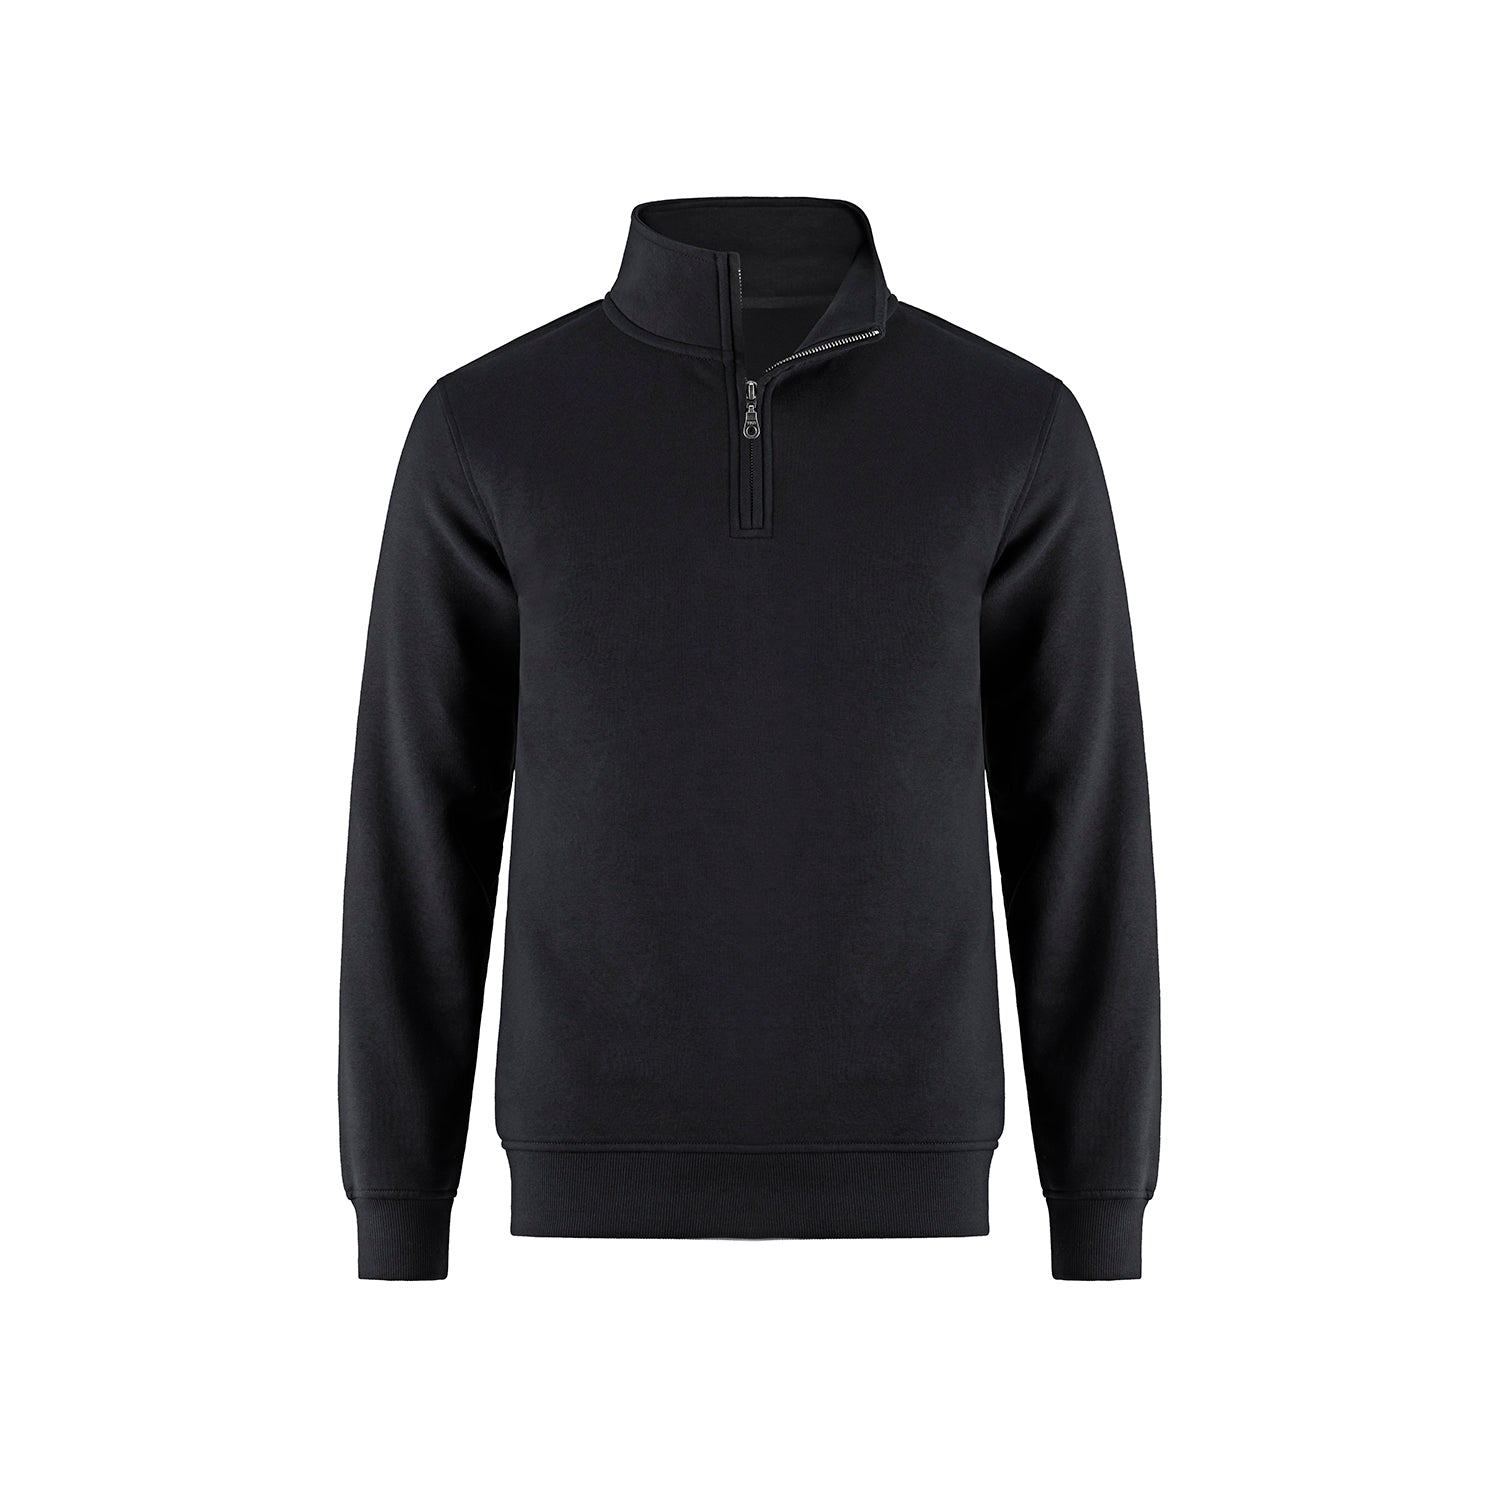 L00545 - Flux 1/4 zip Pullover Black / XS Fleece